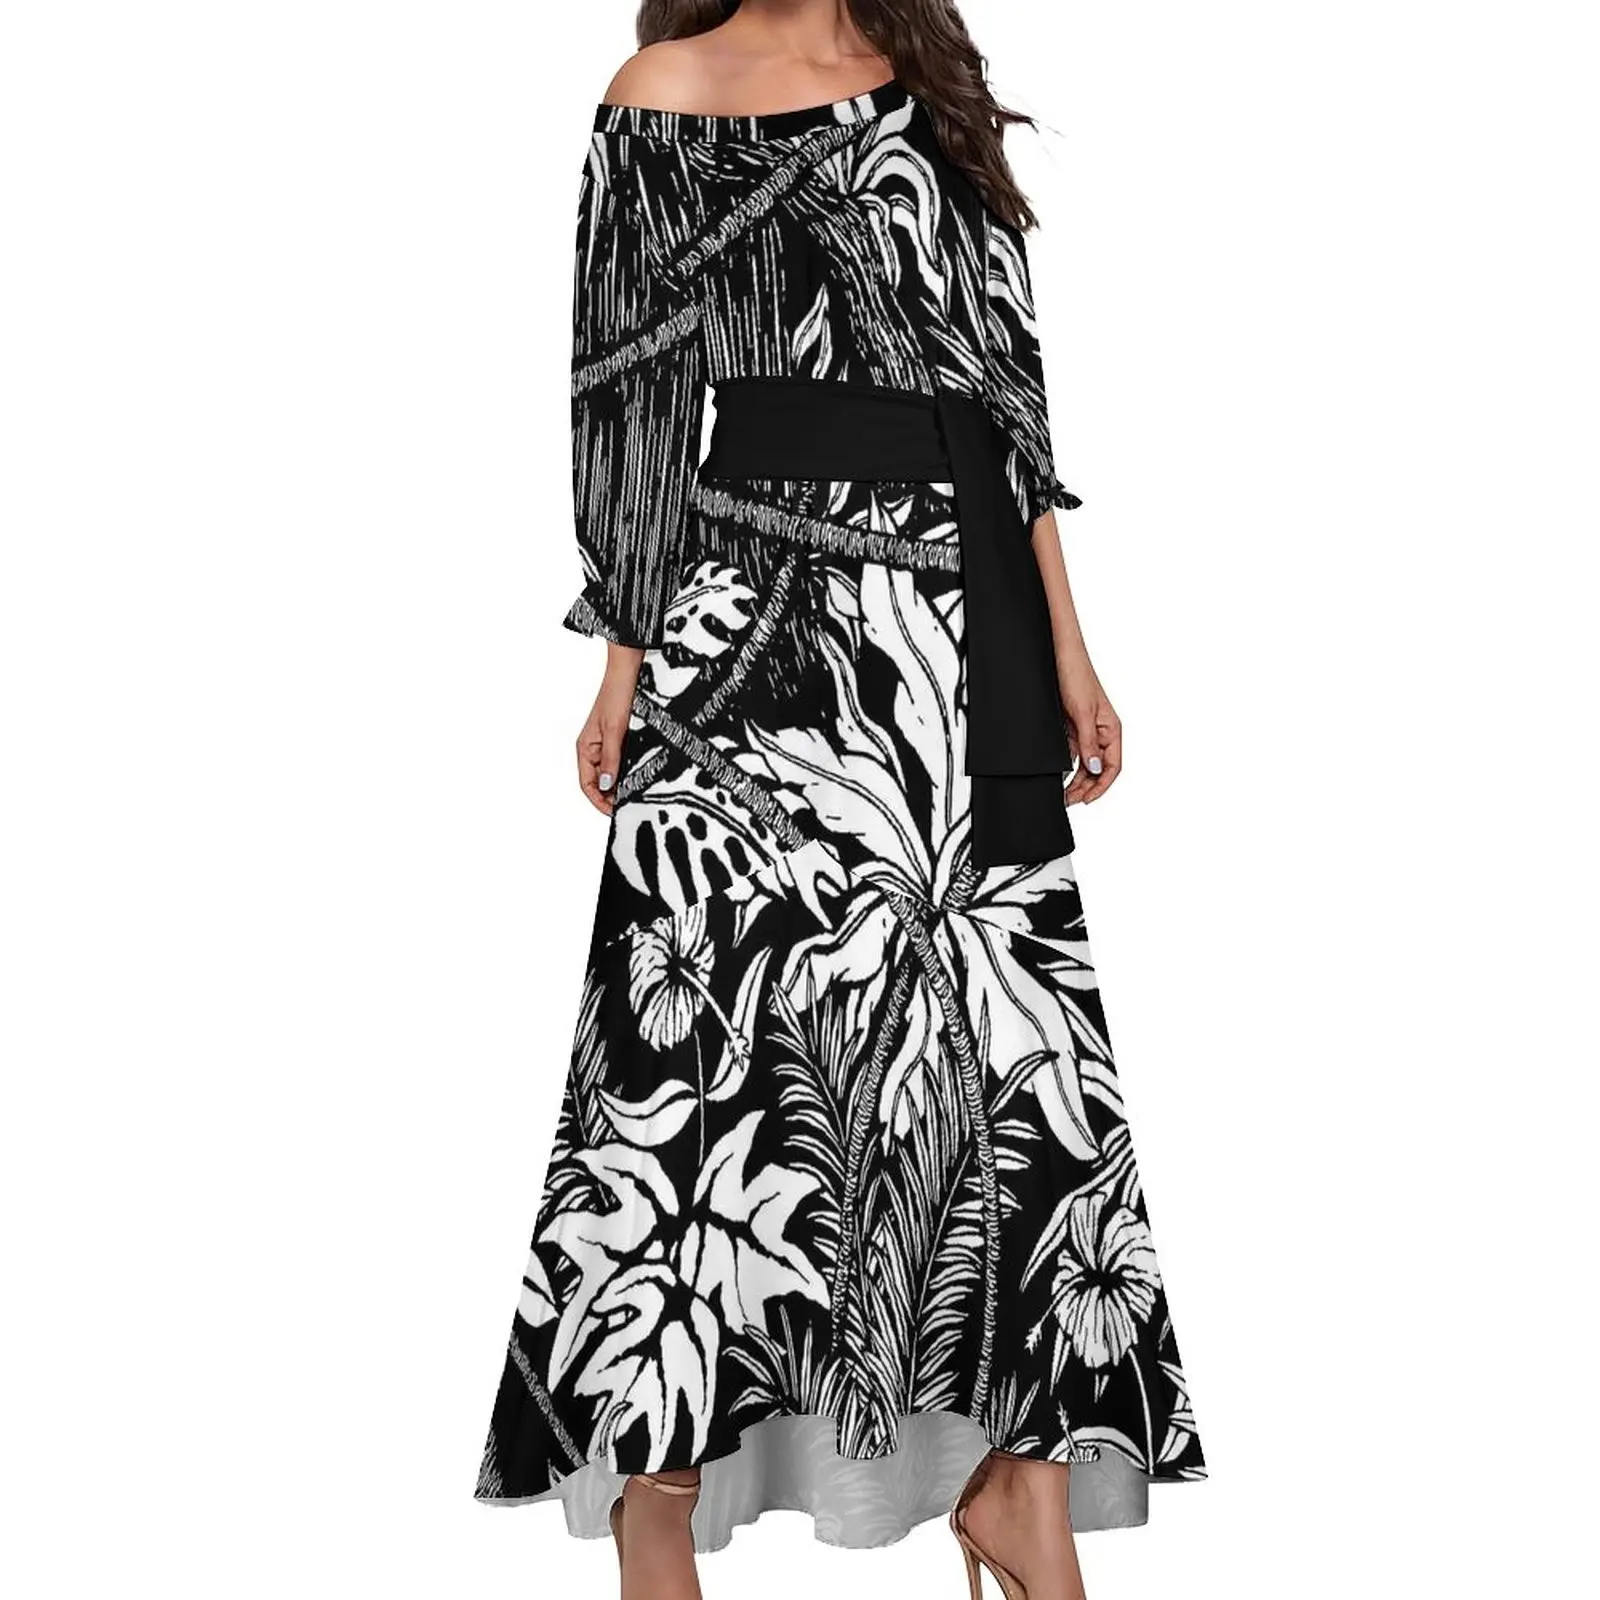 Samoan Tribal Design donna abiti quotidiani stampa polinesiana abbigliamento Plus Size vestito femminile moda Maxi vestito floreale